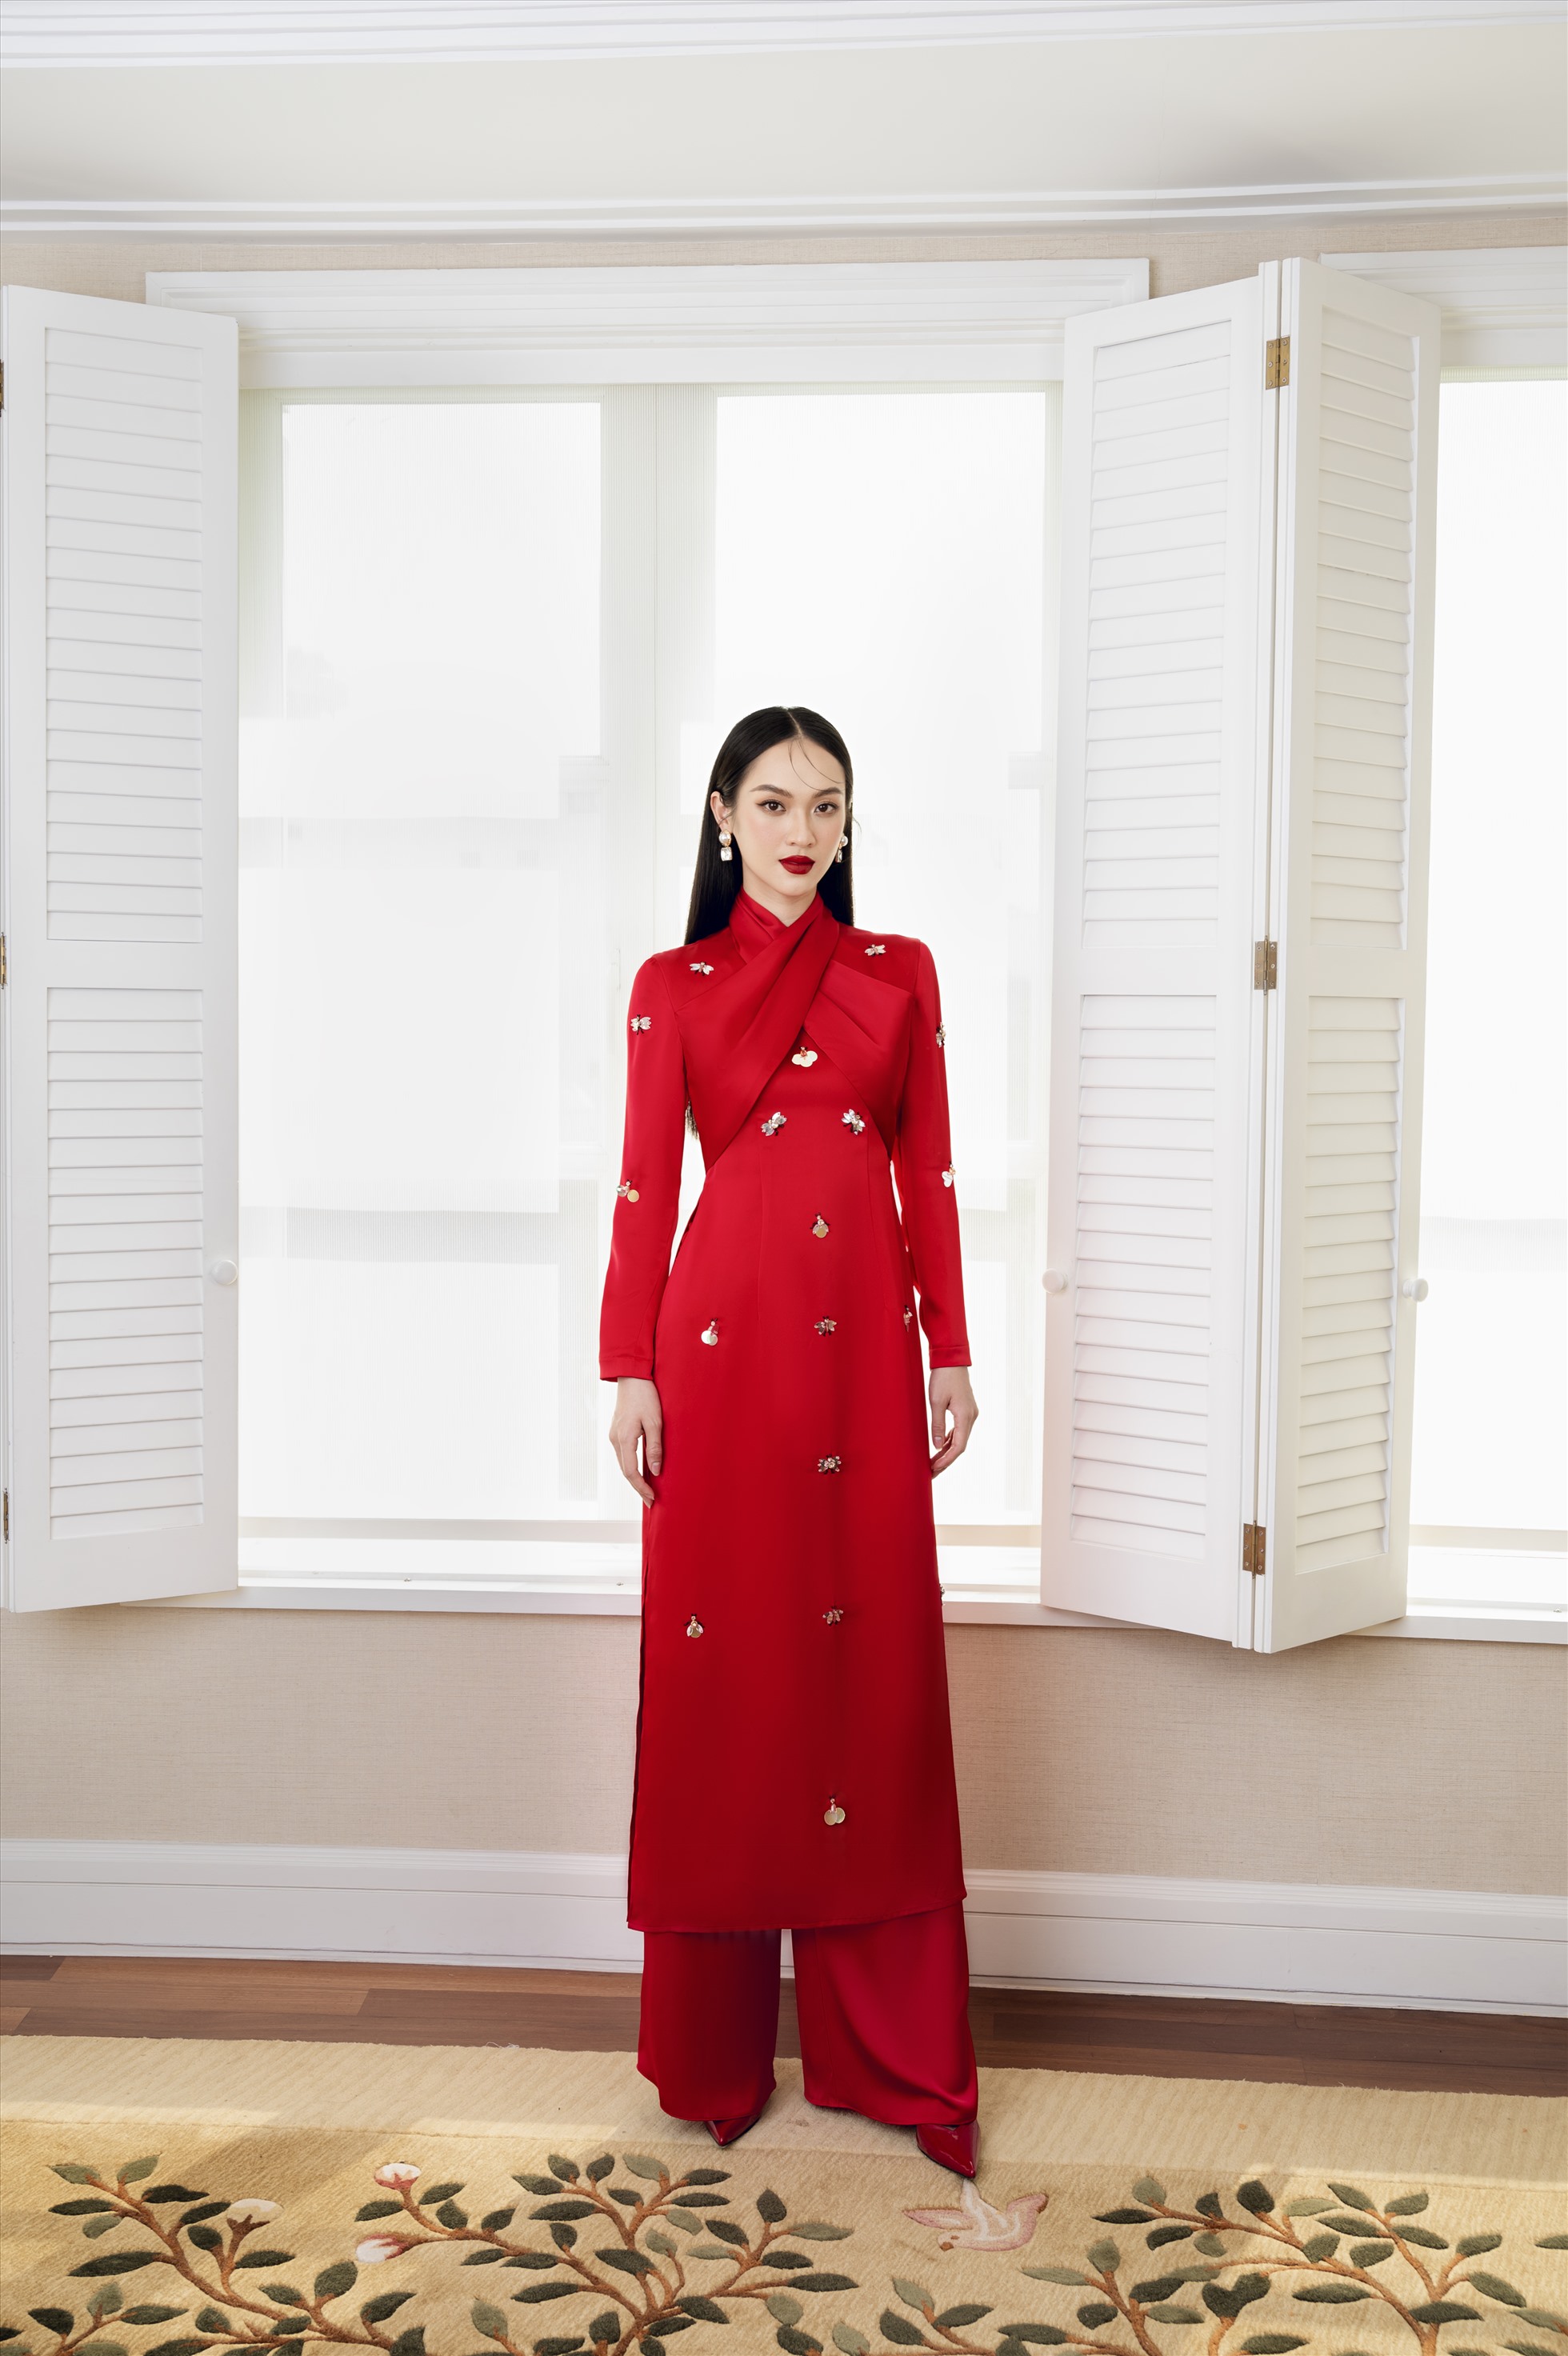 Mẫu áo dài đỏ được cách điệu khéo léo mang đậm không khí Tết. Ảnh: Nhà thiết kế cung cấp.